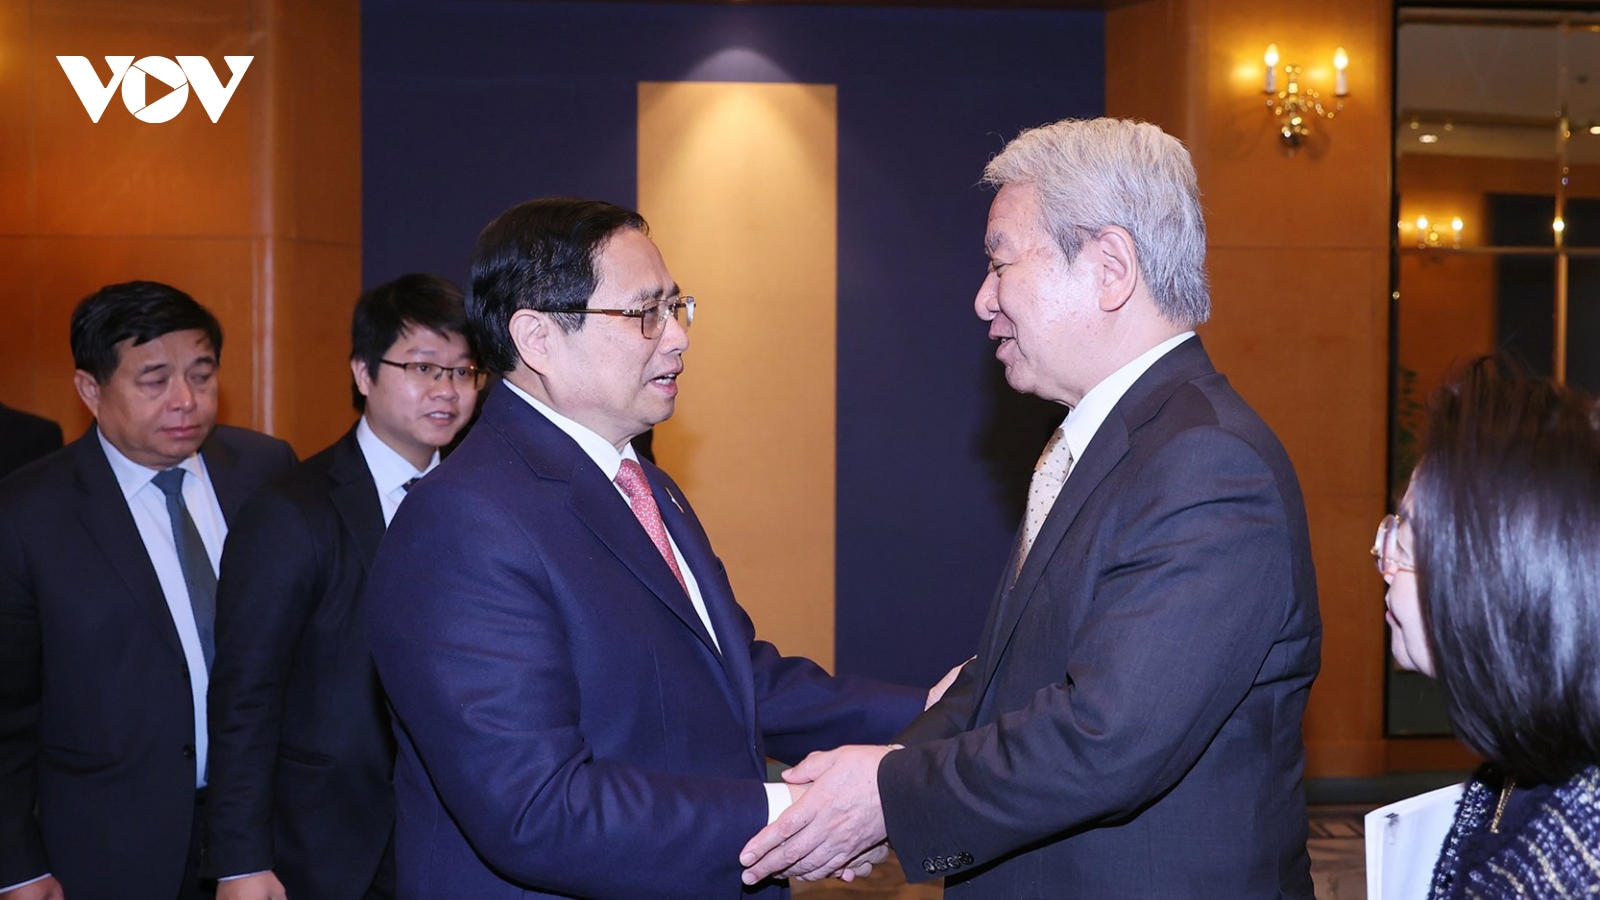 Thủ tướng đề nghị Nhật Bản tập trung ODA cho 5 lĩnh vực trọng tâm của Việt Nam